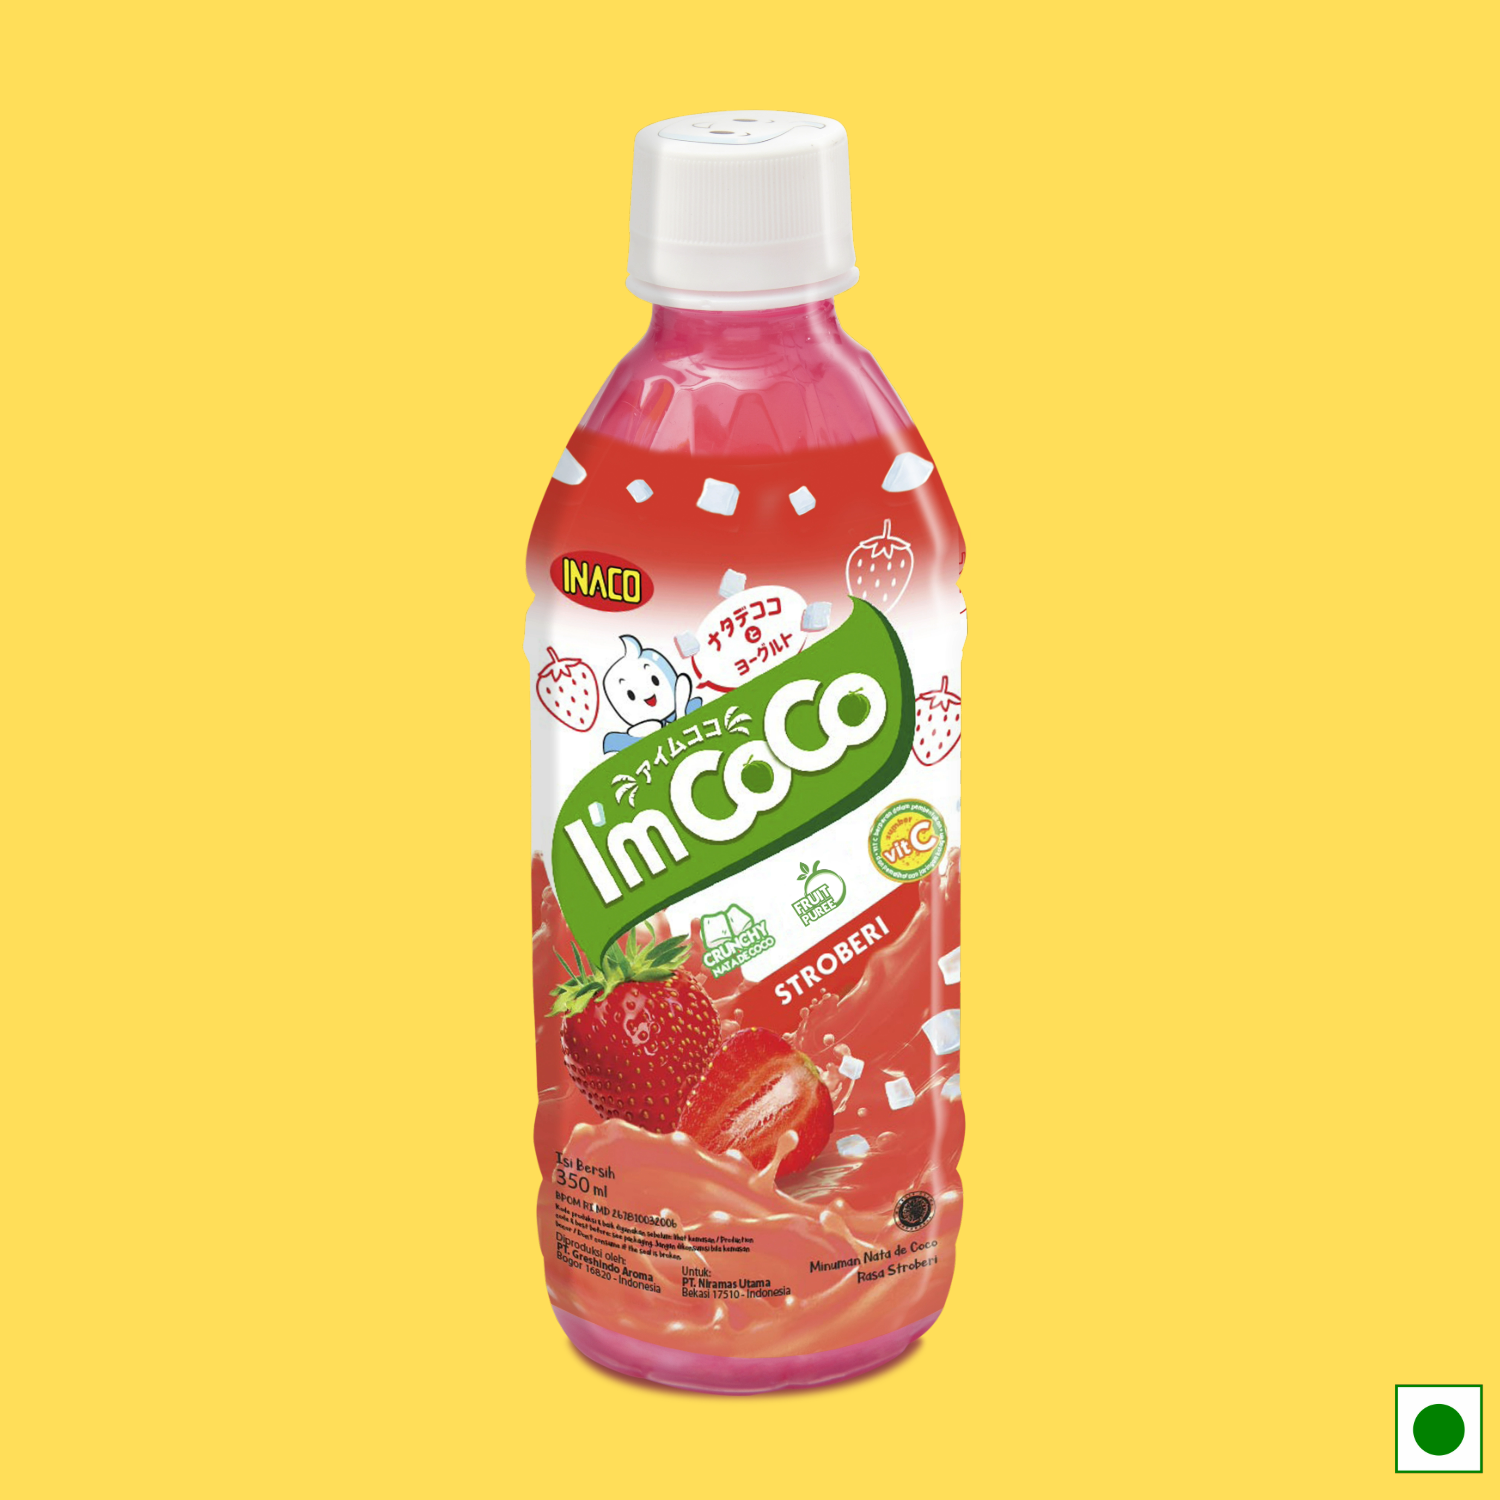 INACO I'm Coco Strawberry, 350ml (Imported)